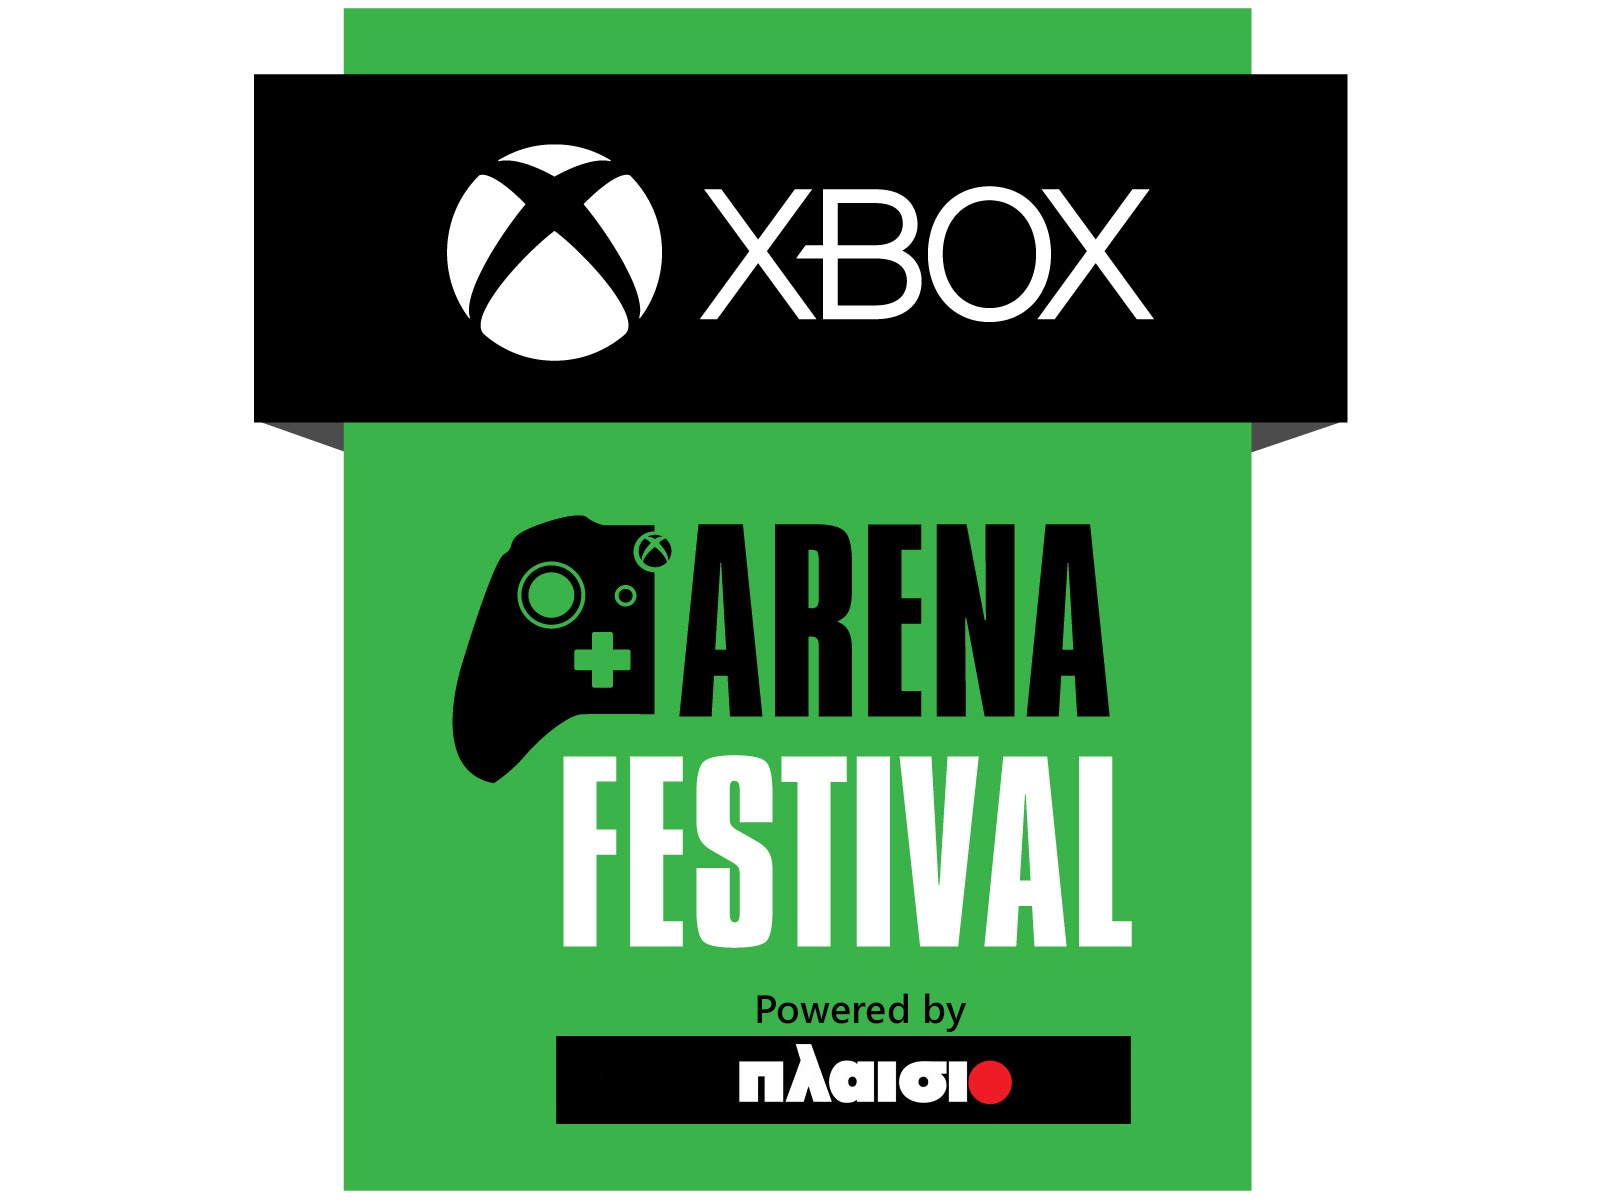 Το Xbox Arena Festival powered by Πλαίσιο μοιράζει δώρα αξίας 20.000 ευρώ